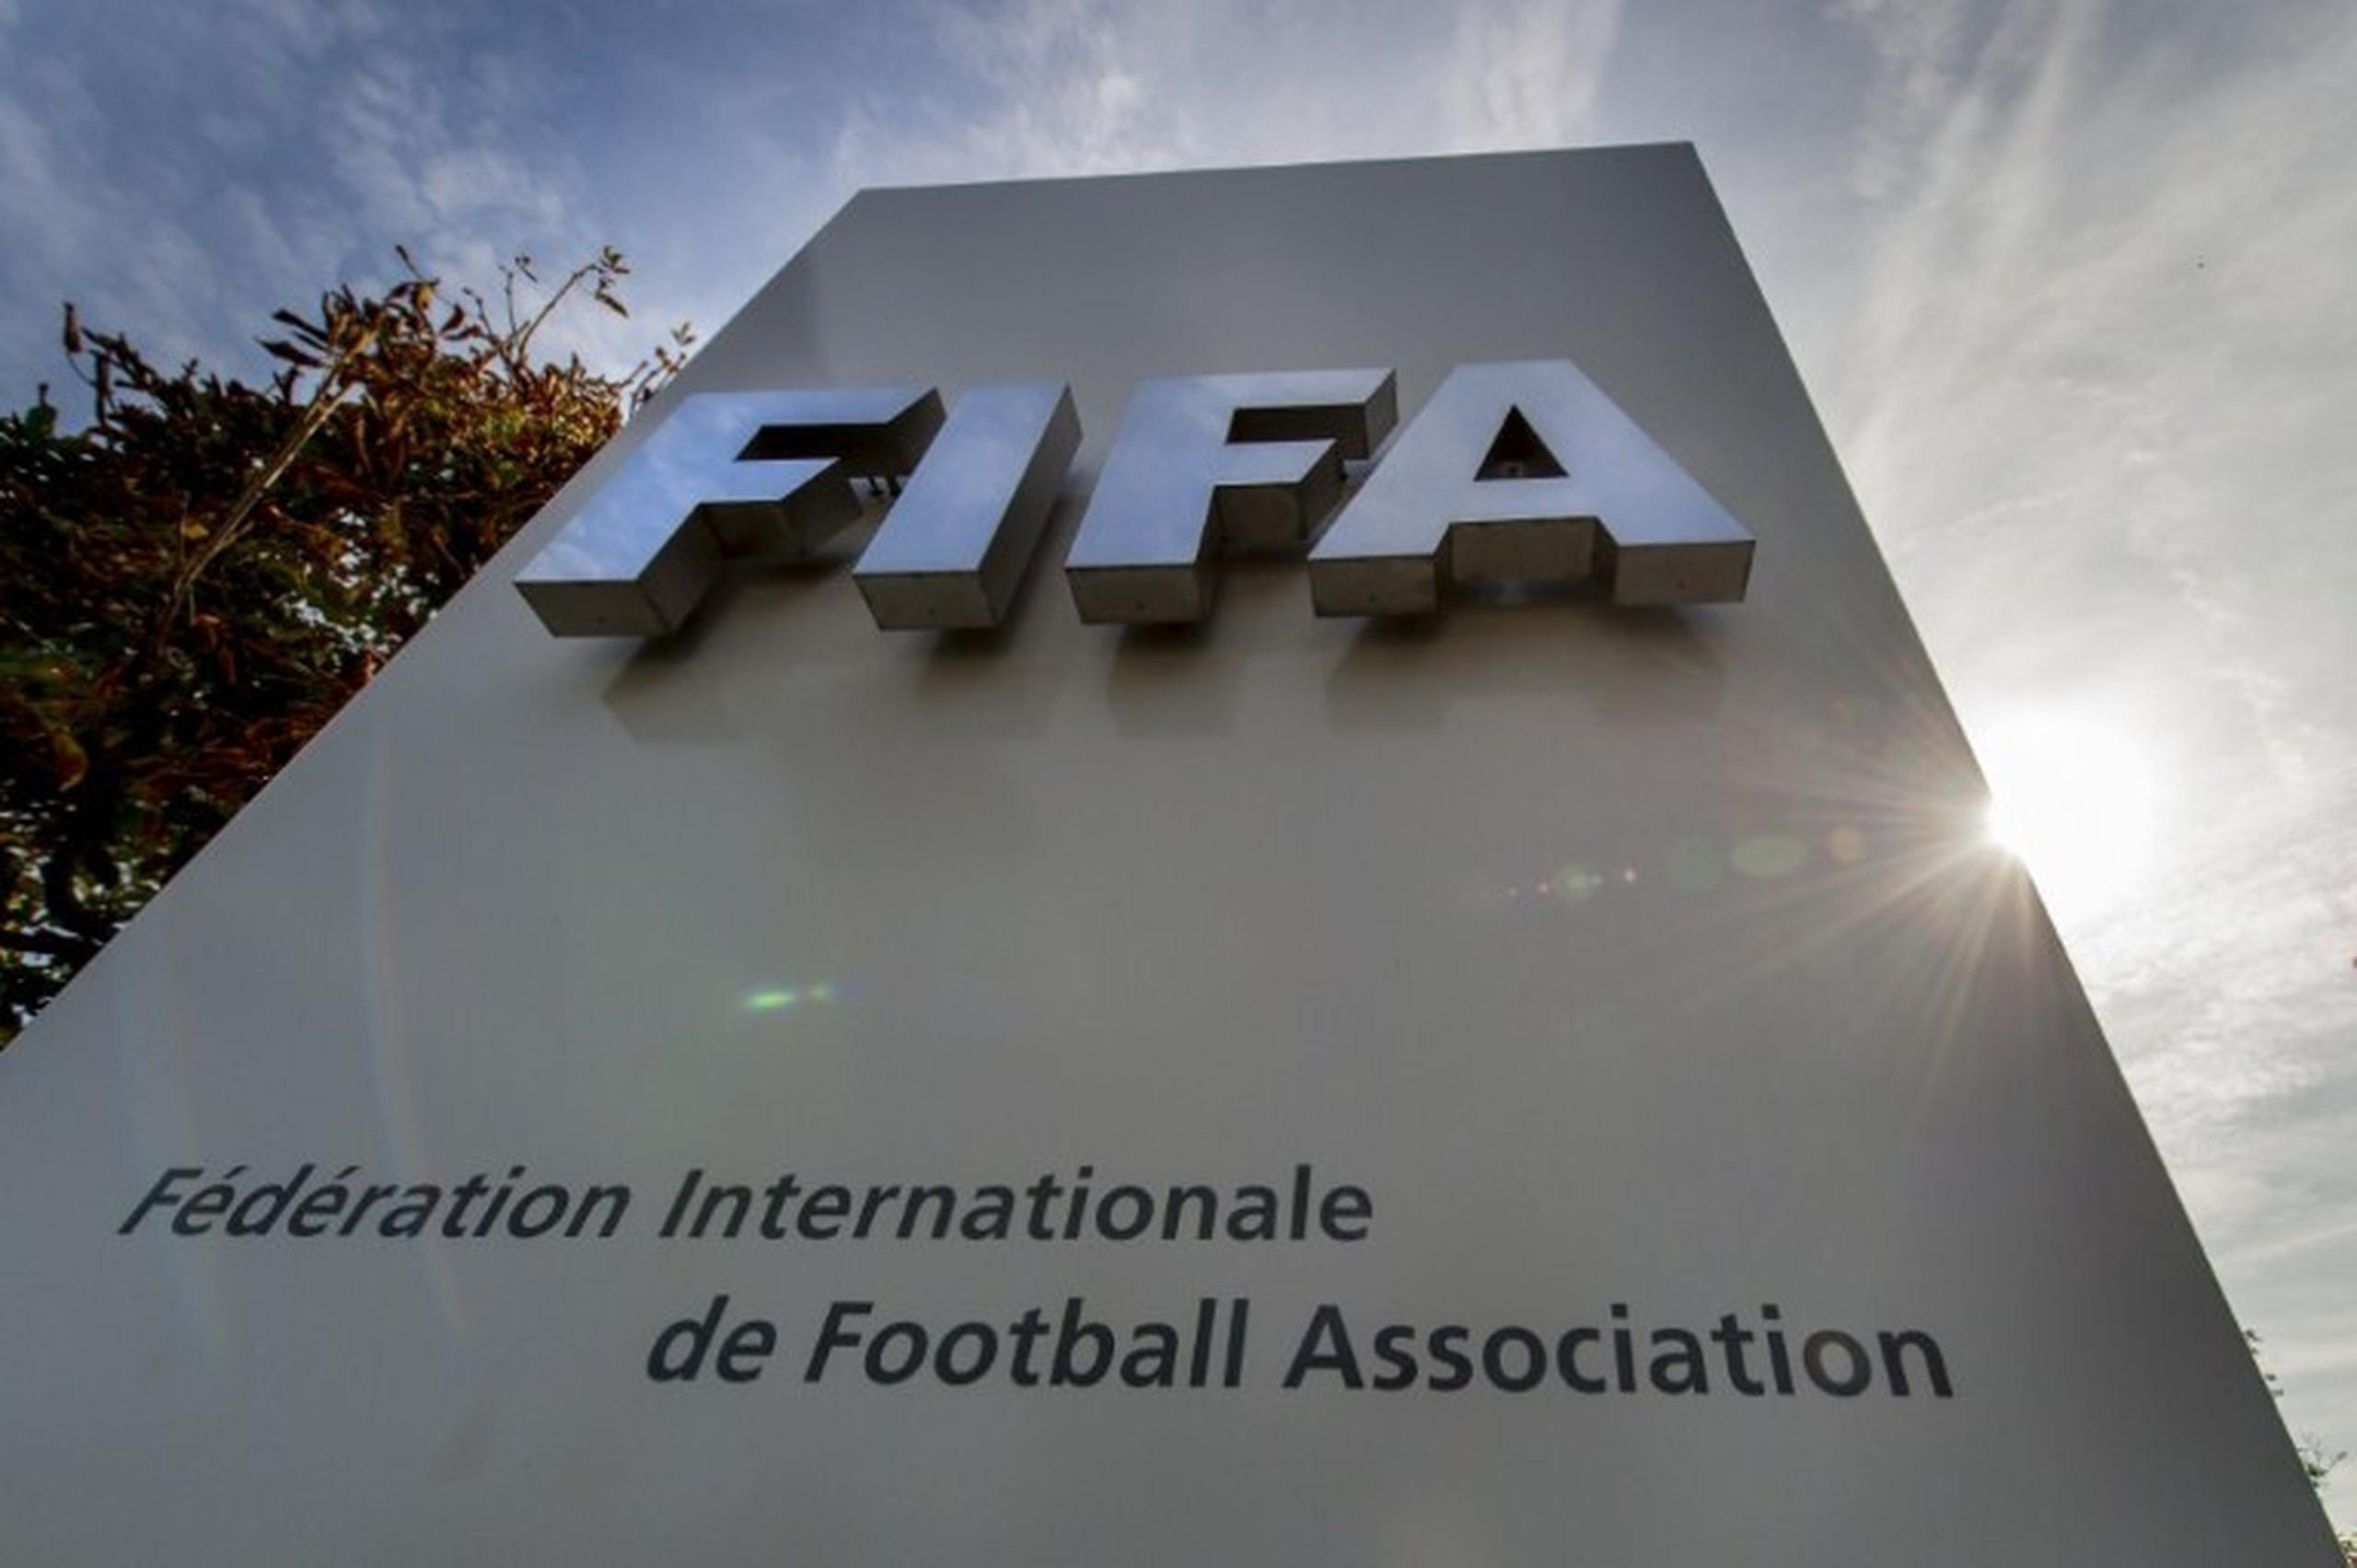 El cuerpo rector del fútbol a nivel global, la FIFA, le otorgó la sede del Mundial del 2022 a Catar en un manchado proceso de selección que provocó investigaciones y acusaciones criminales que estremecieron la estructura de FIFA.